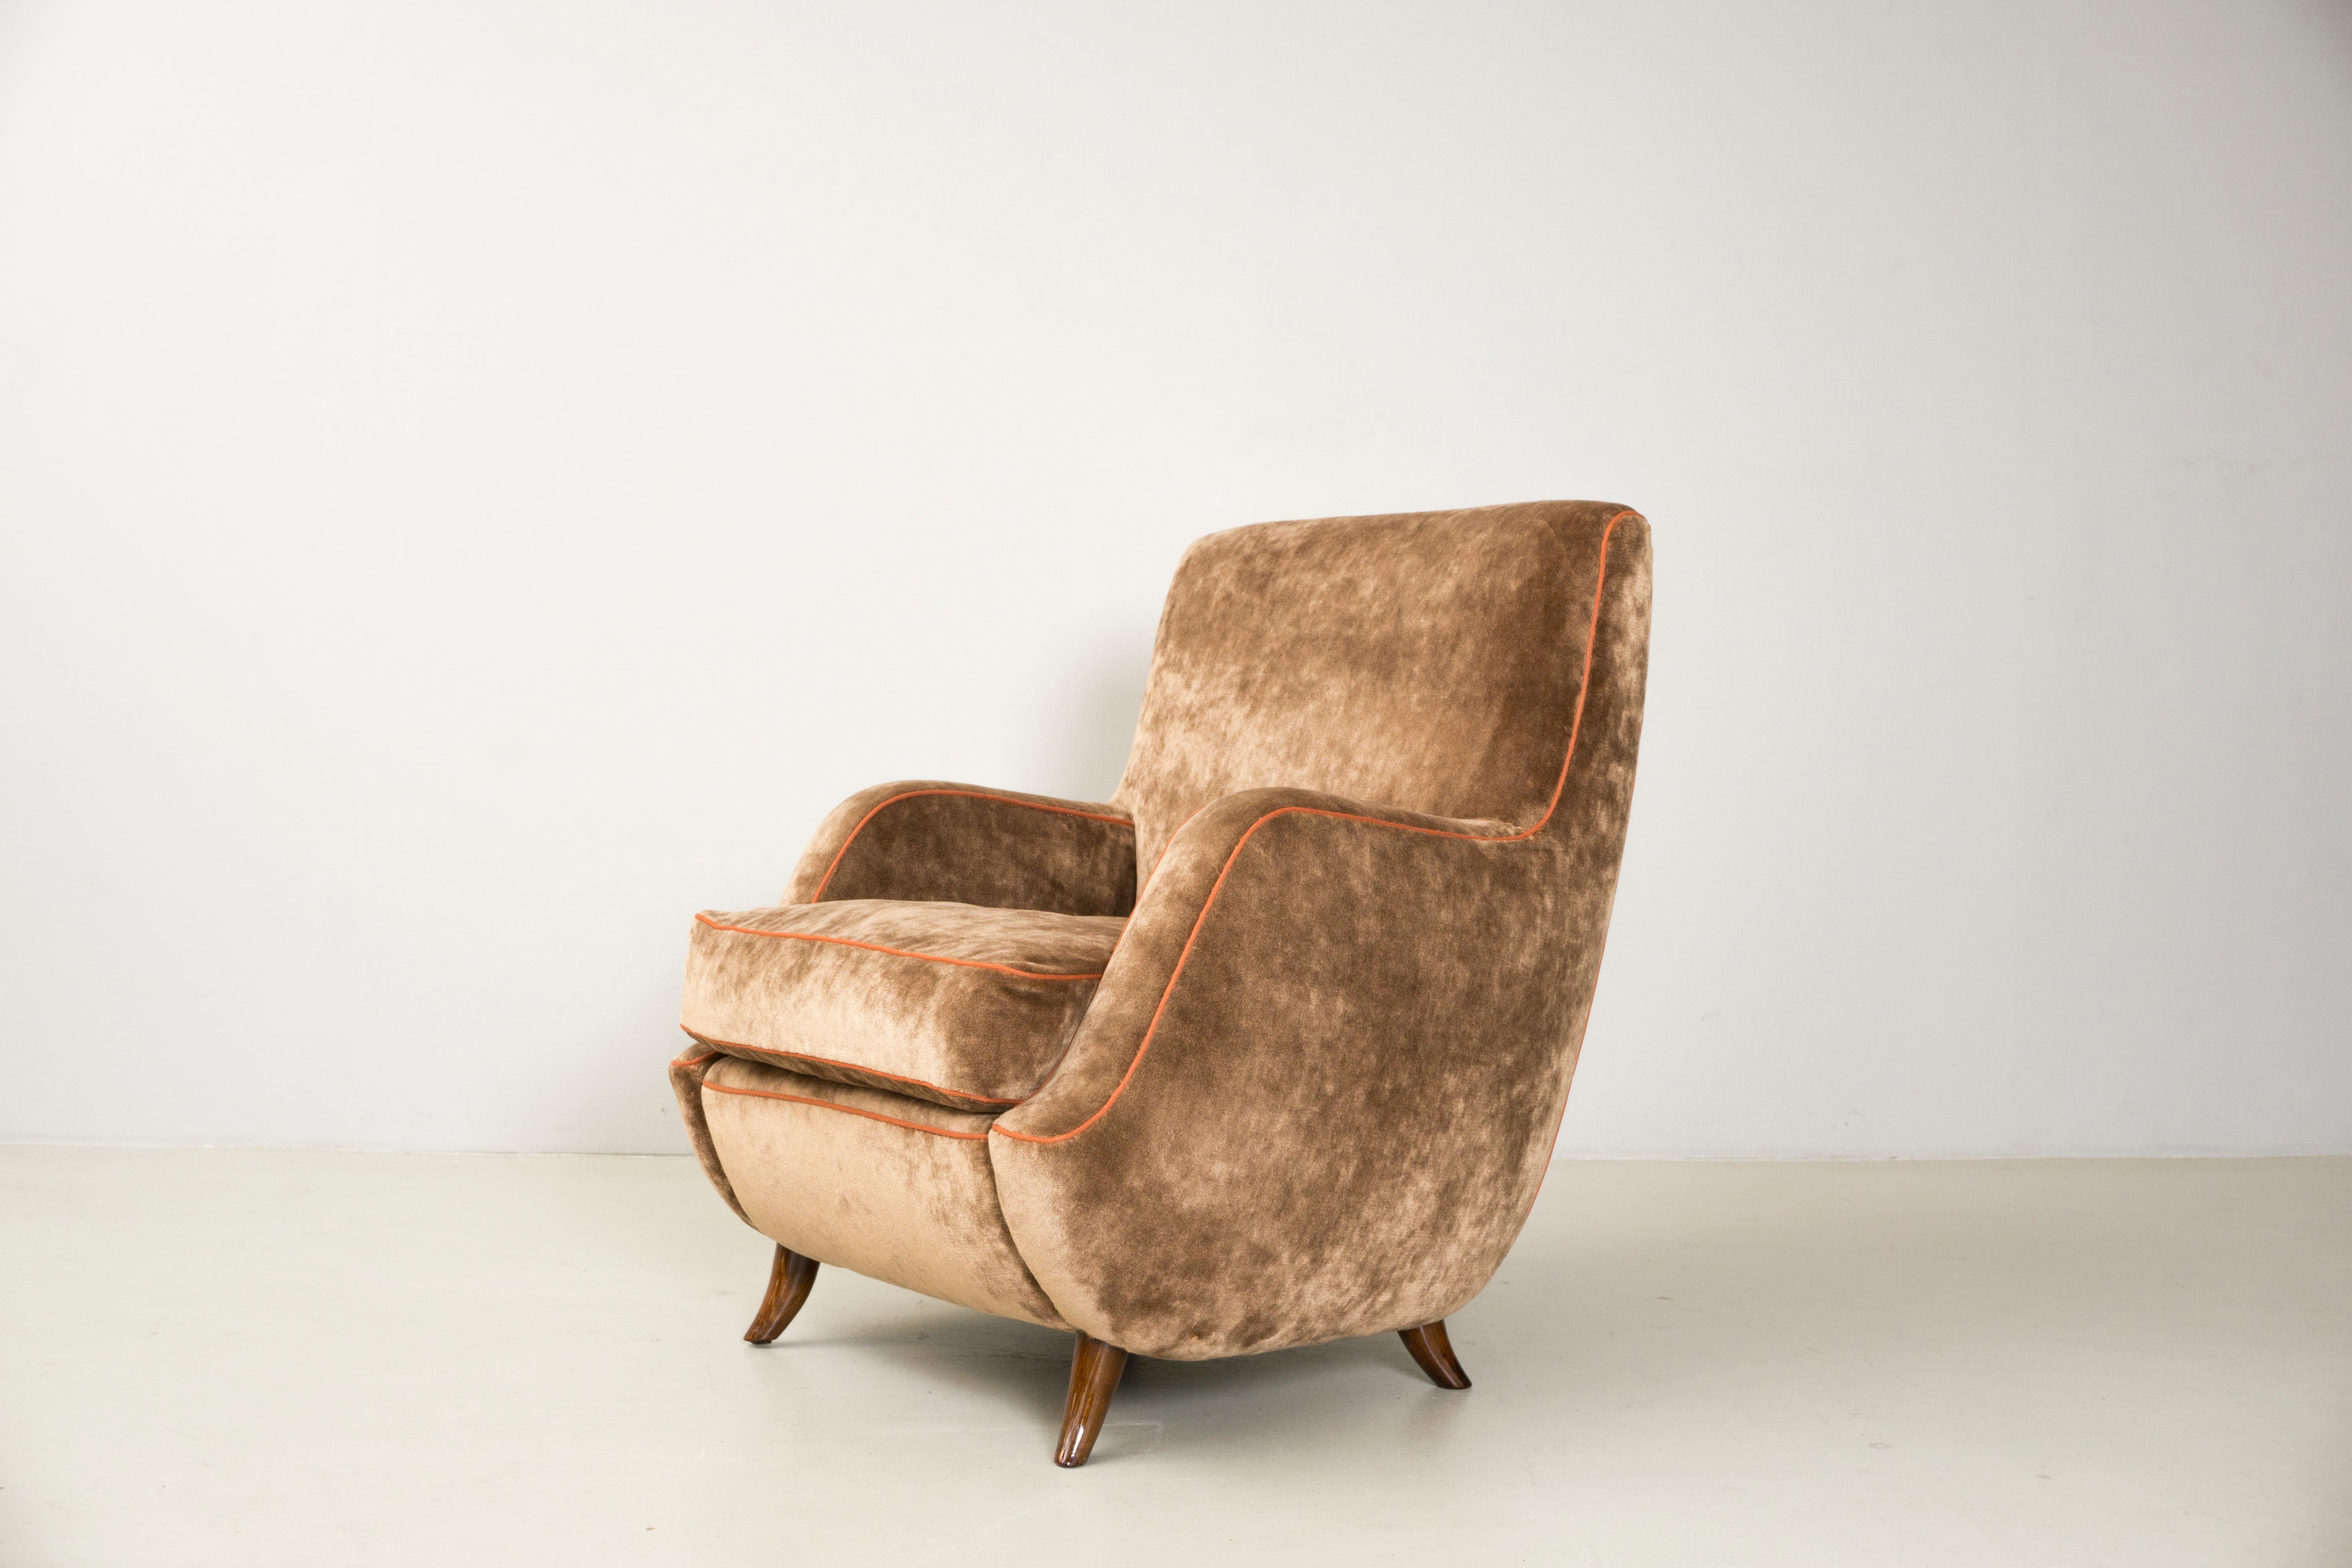 Diese Stühle mit Armlehnen wurden von Carlo de Carli in den 40er Jahren entworfen, was sie sehr selten macht. Die Polsterung ist mit hochwertigem Samt von DEDAR MILANO komplett neu. Die Stühle haben eine Holzkonstruktion, die Beine der Stühle sind